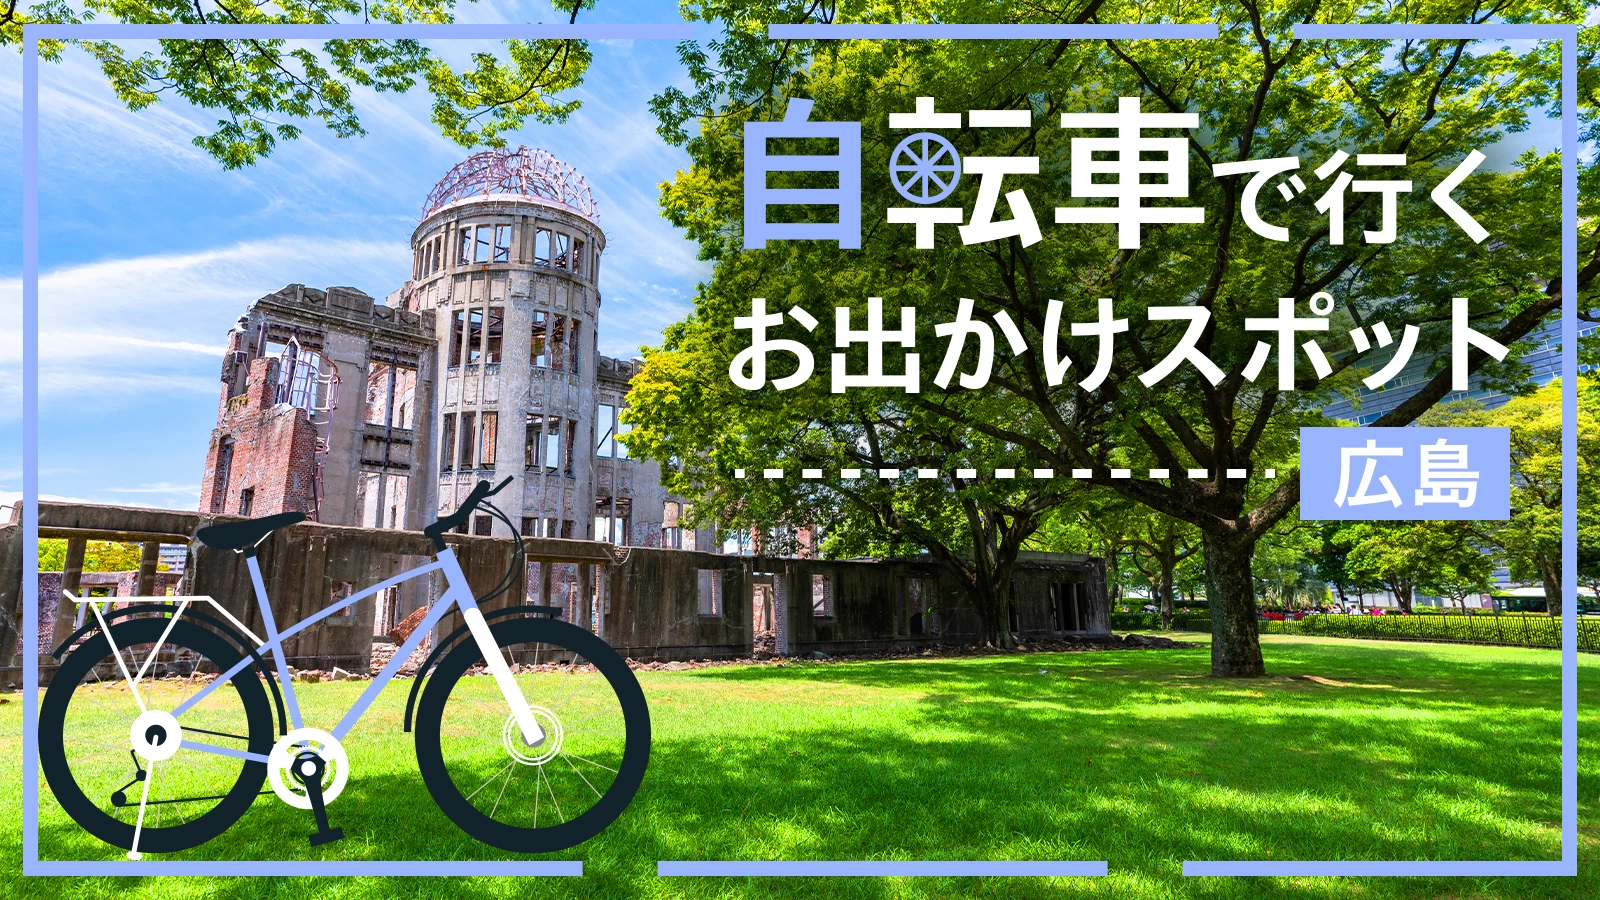 【広島・サイクリング旅】自転車で行くおすすめのおでかけスポット15選